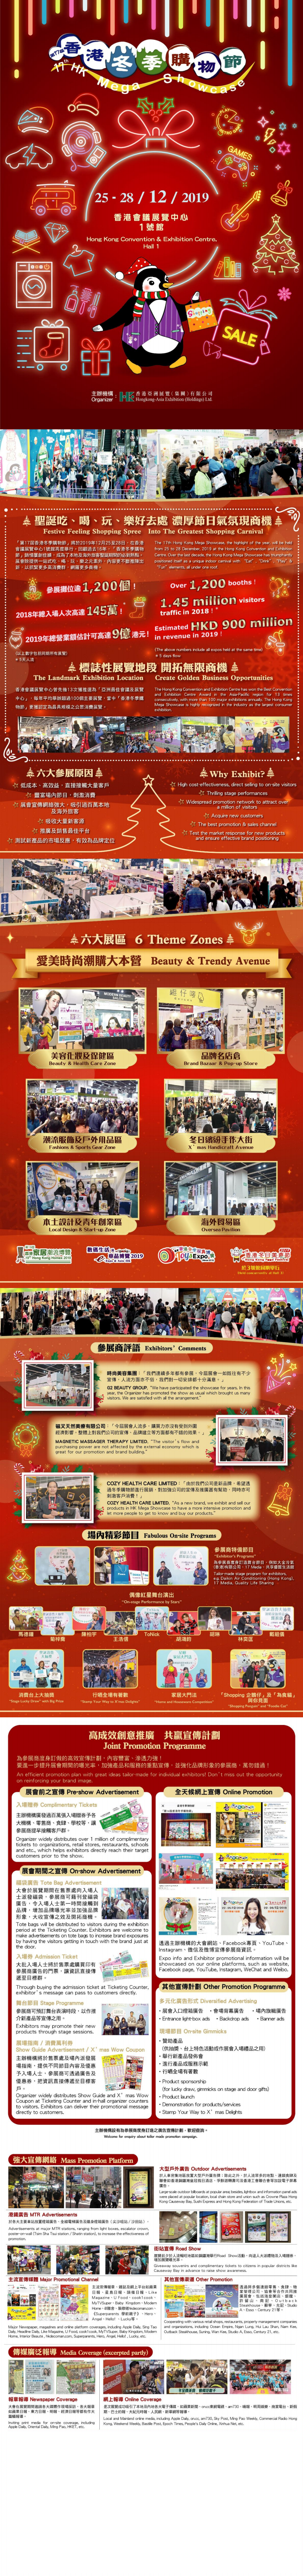 香港购物节展览会